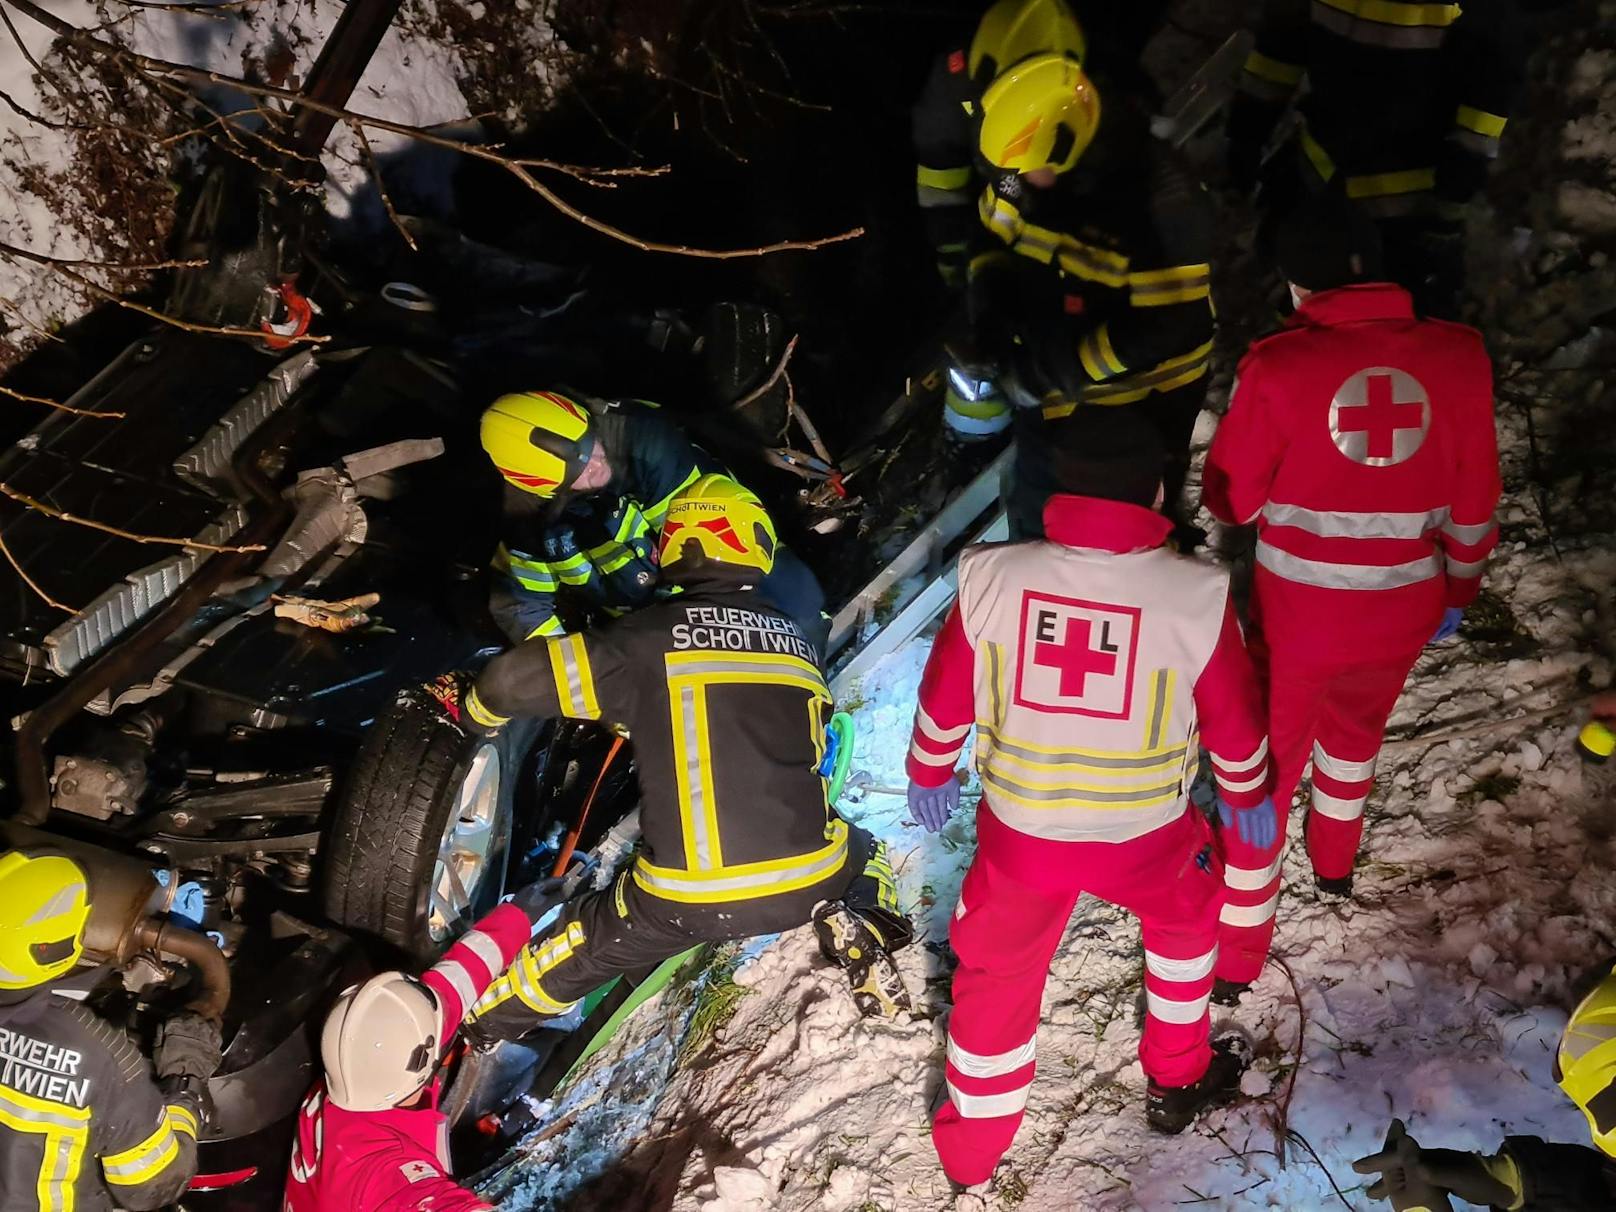 Lenker nach Sturz in Bach in Pkw eingeschlossen: Die Feuerwehr befreite den Mann